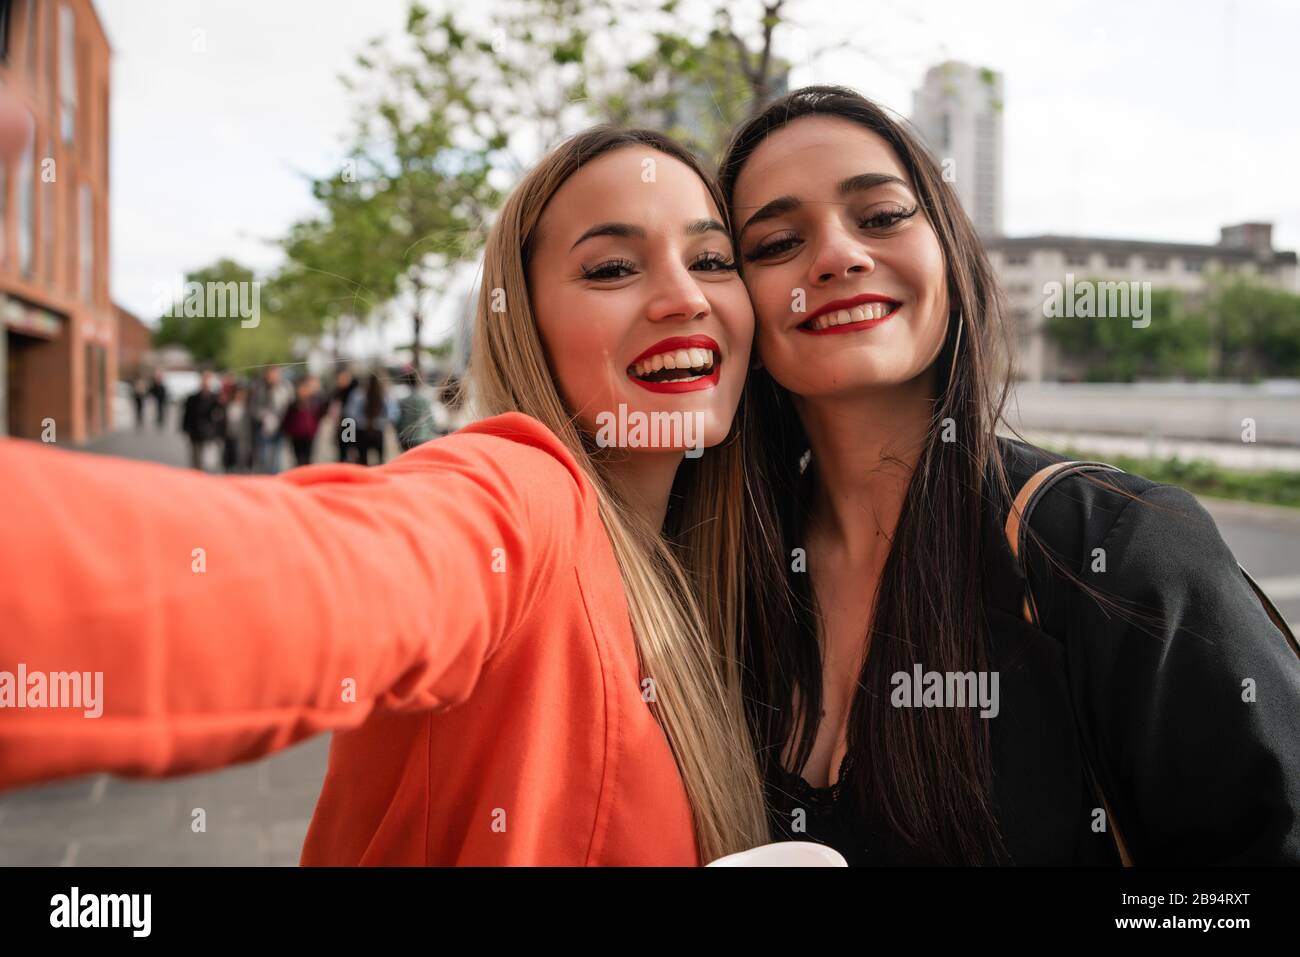 Ritratto di due giovani amici che prendono un selfie all'aperto in strada. Stili di vita e concetti di amicizia. Foto Stock